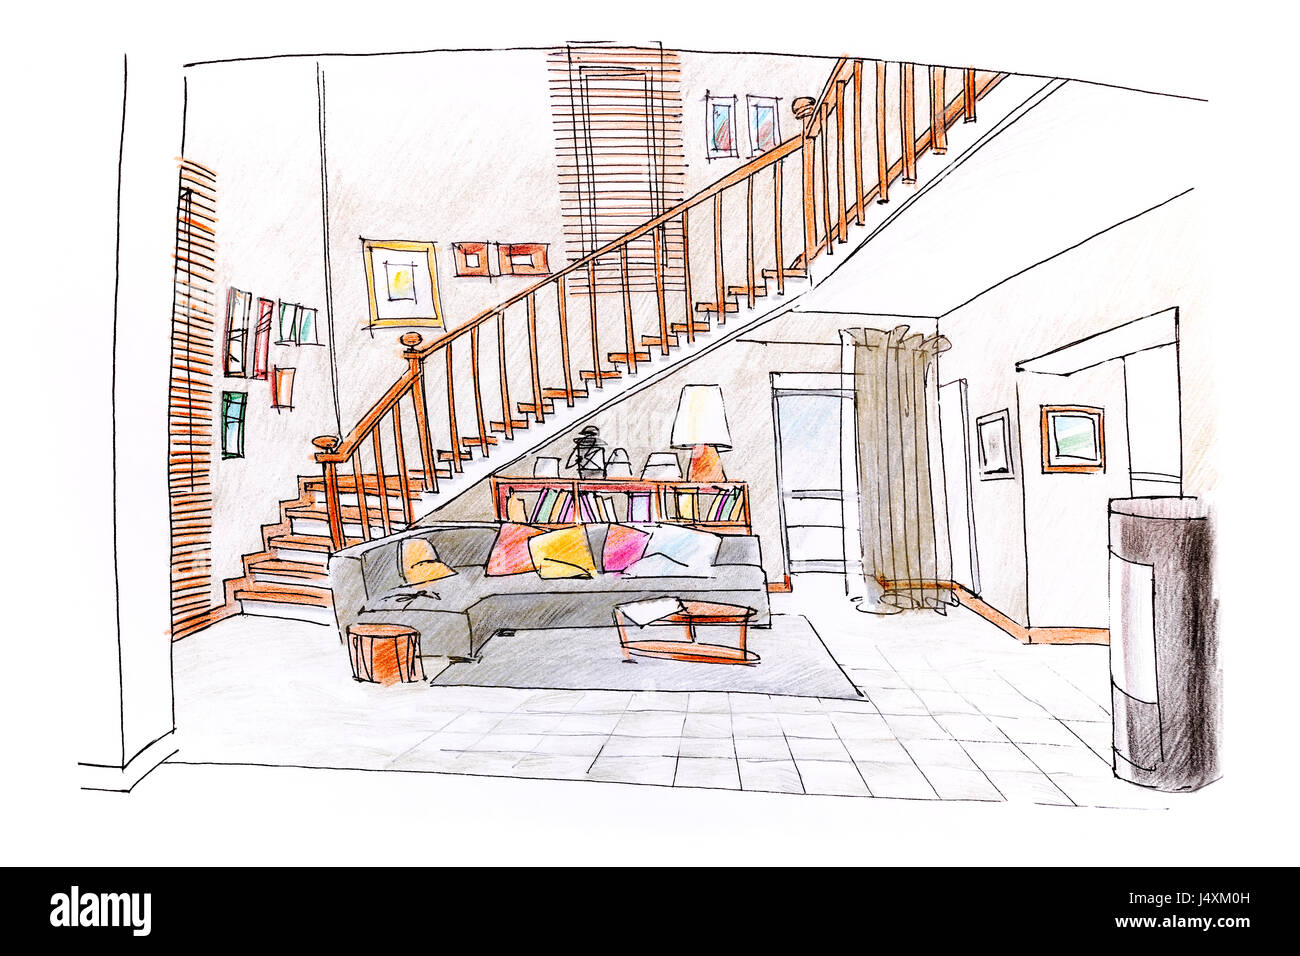 Home Interior Design Farbige Hand Gezeichnete Skizze Des